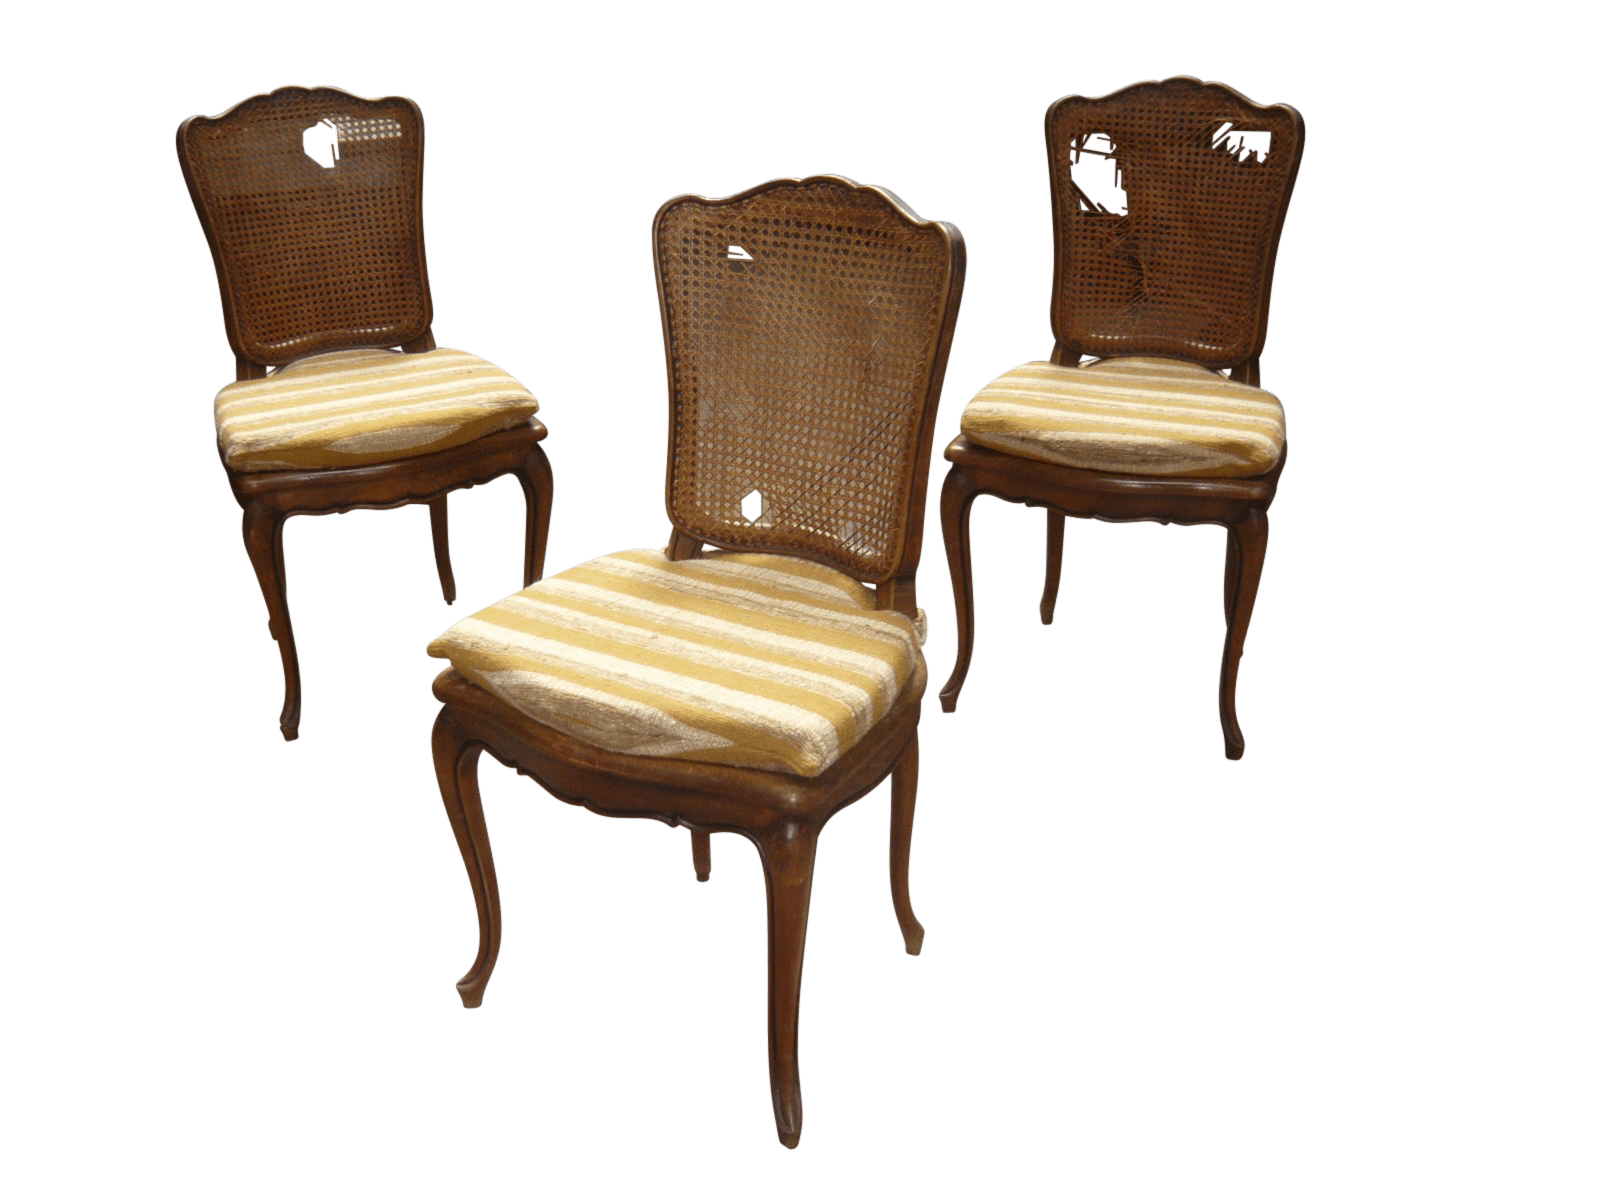 SE10784 - Set di 3 sedie con seduta e schienale in paglia di Vienna  (cuscini e restauro escluso dal prezzo) - Brocante - Riccardo Barthel